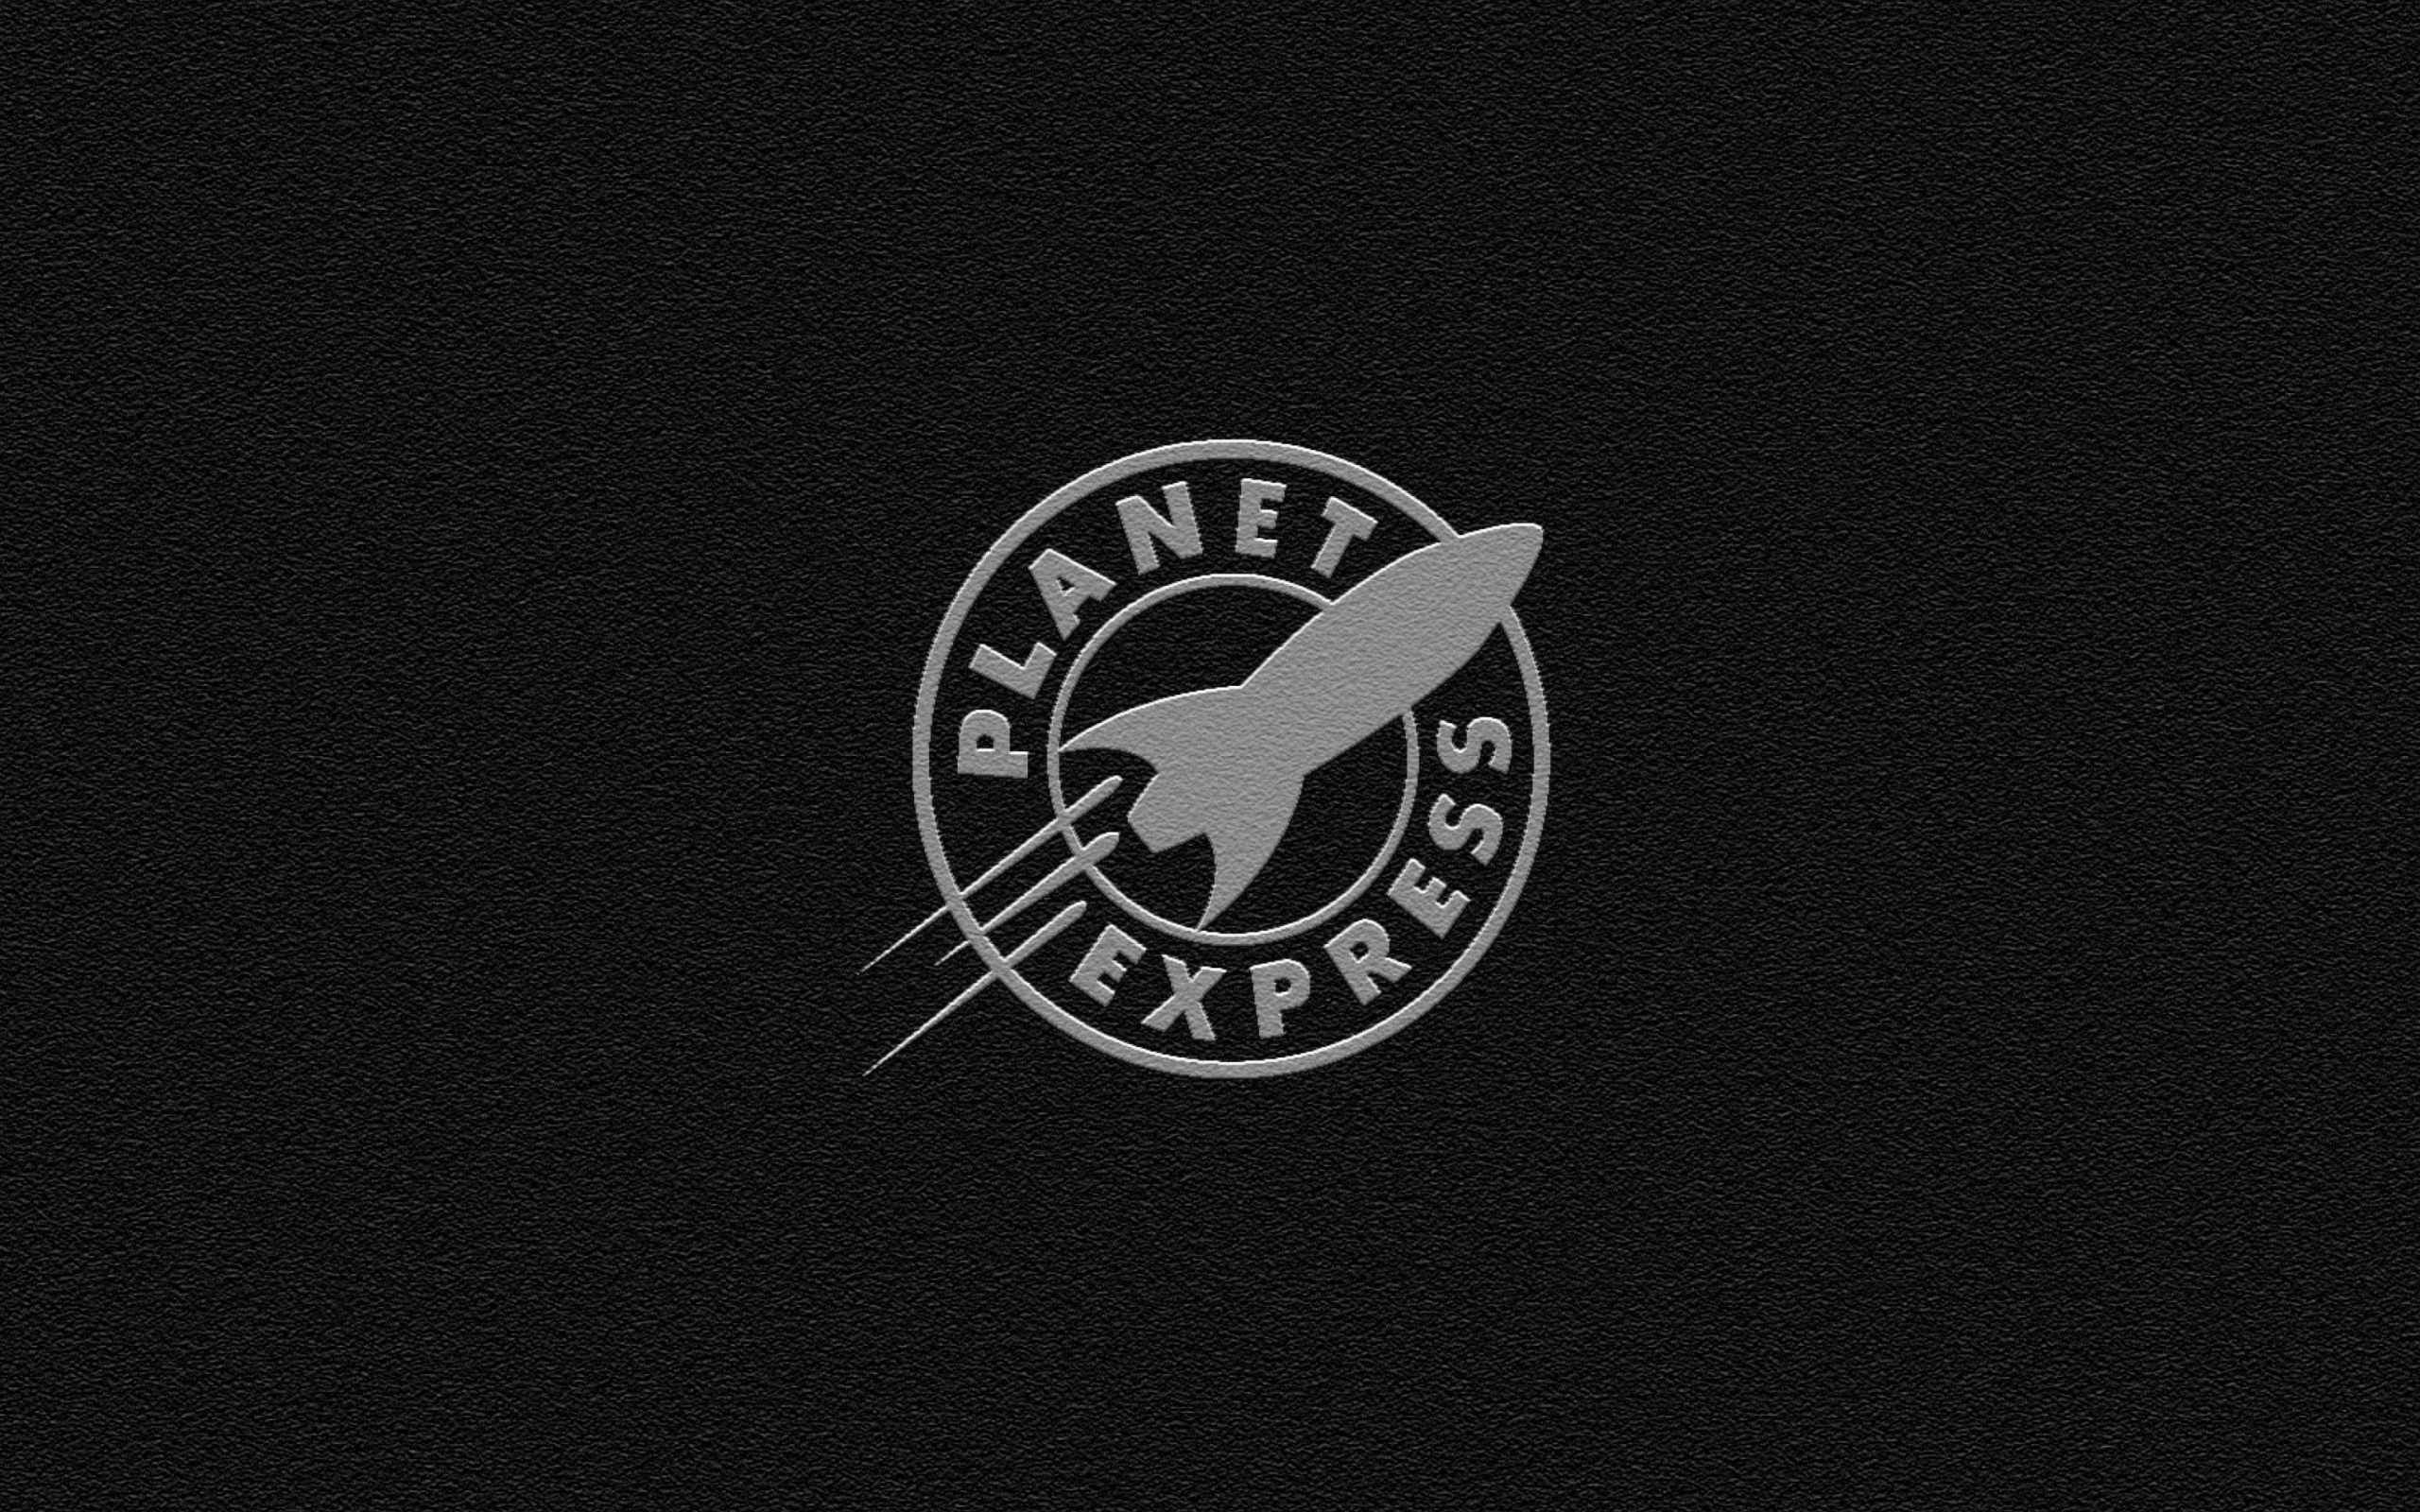 Sfondi Planet Express 2560x1600